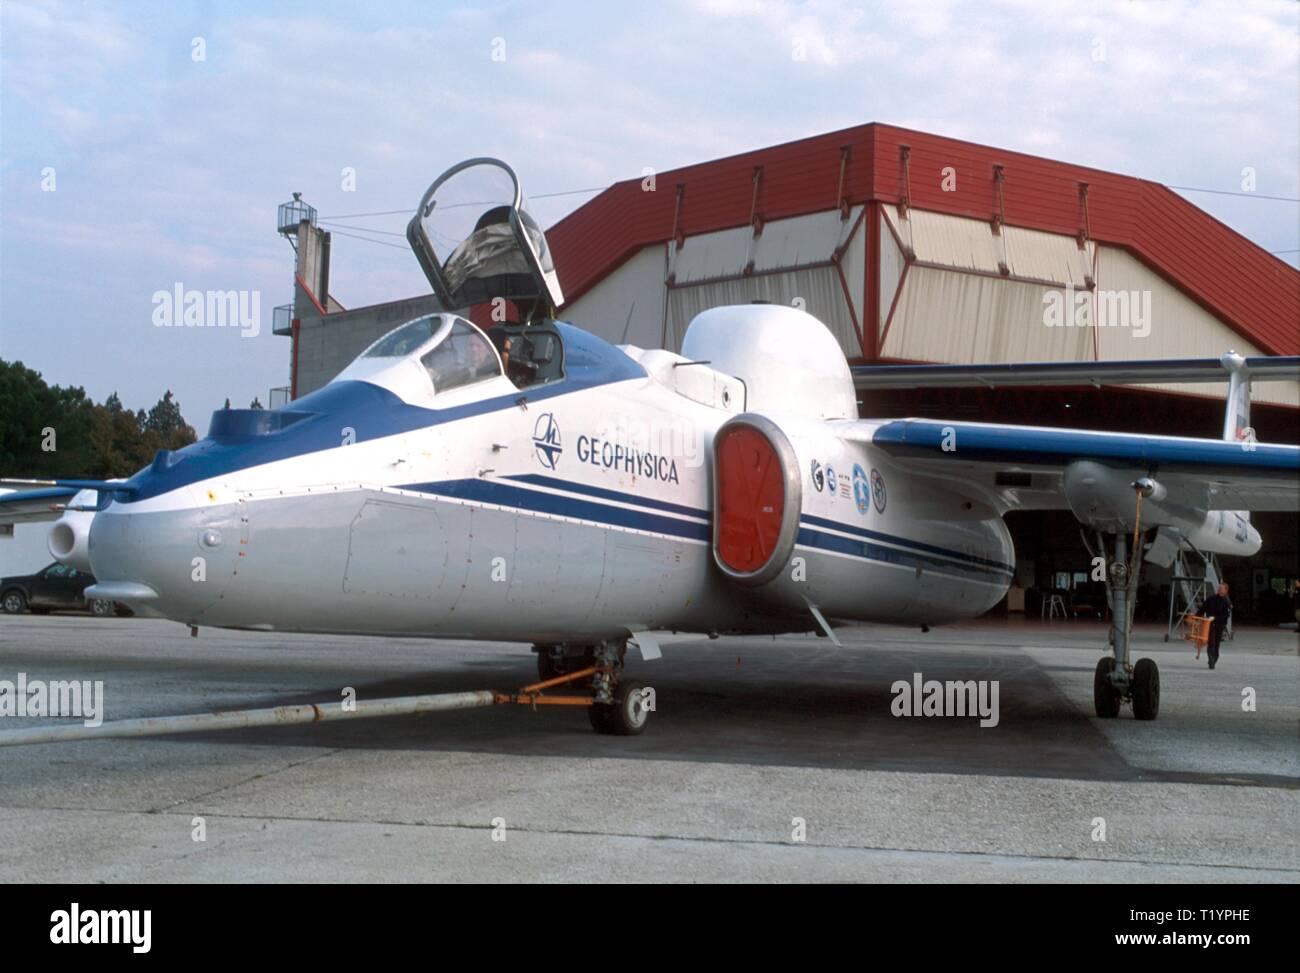 Miassichtchev M-55, l'ancien militaire soviétique à partir de 1992, l'avion espion employé par le Consortium européen scientifique pour des recherches sur l'atmosphère Geophysica ozone stratosphérique, stratosphère-troposphère l'interaction et ses répercussions sur le réchauffement climatique Banque D'Images